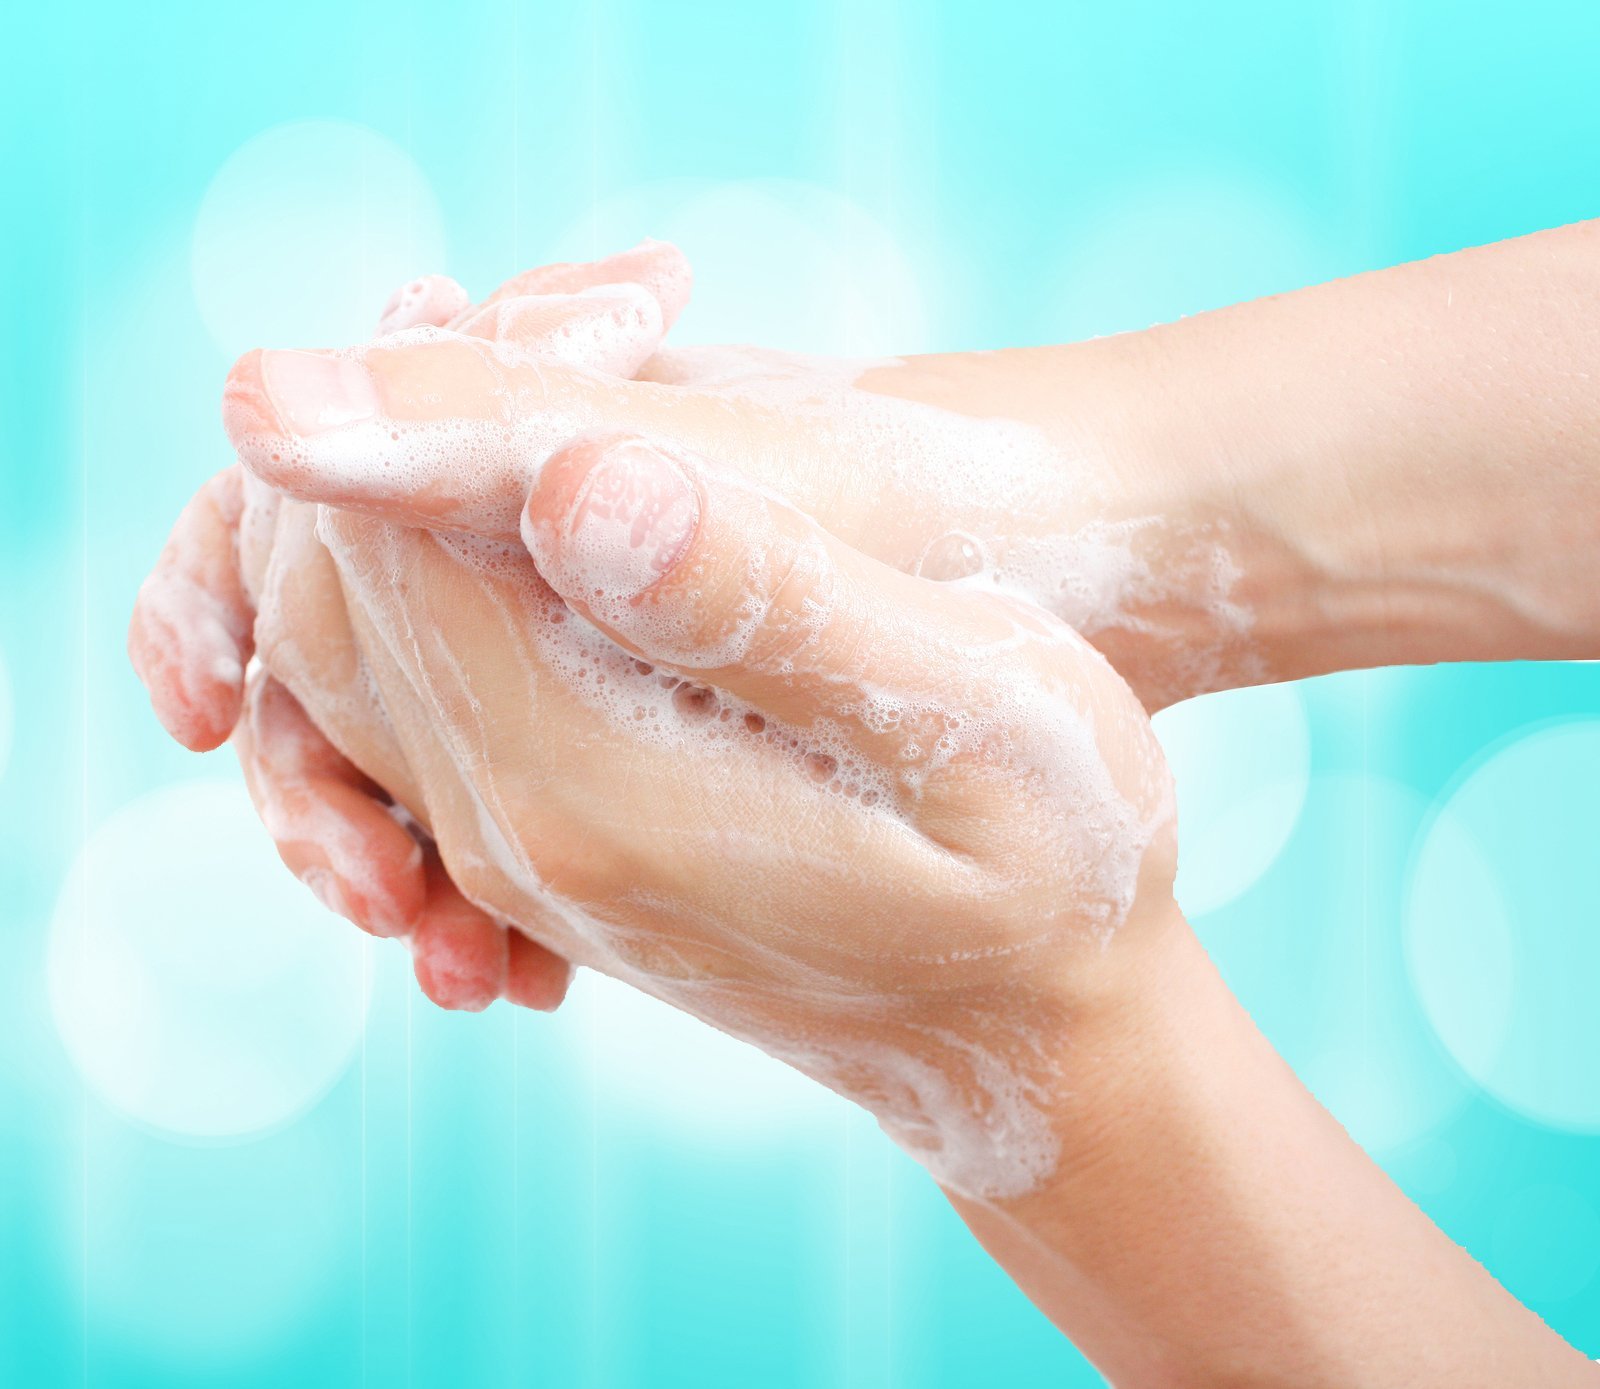 Гигиена мытья рук. Мыло для рук. Мытье рук с мылом. Мытье рук жидким мылом. Руки моются.